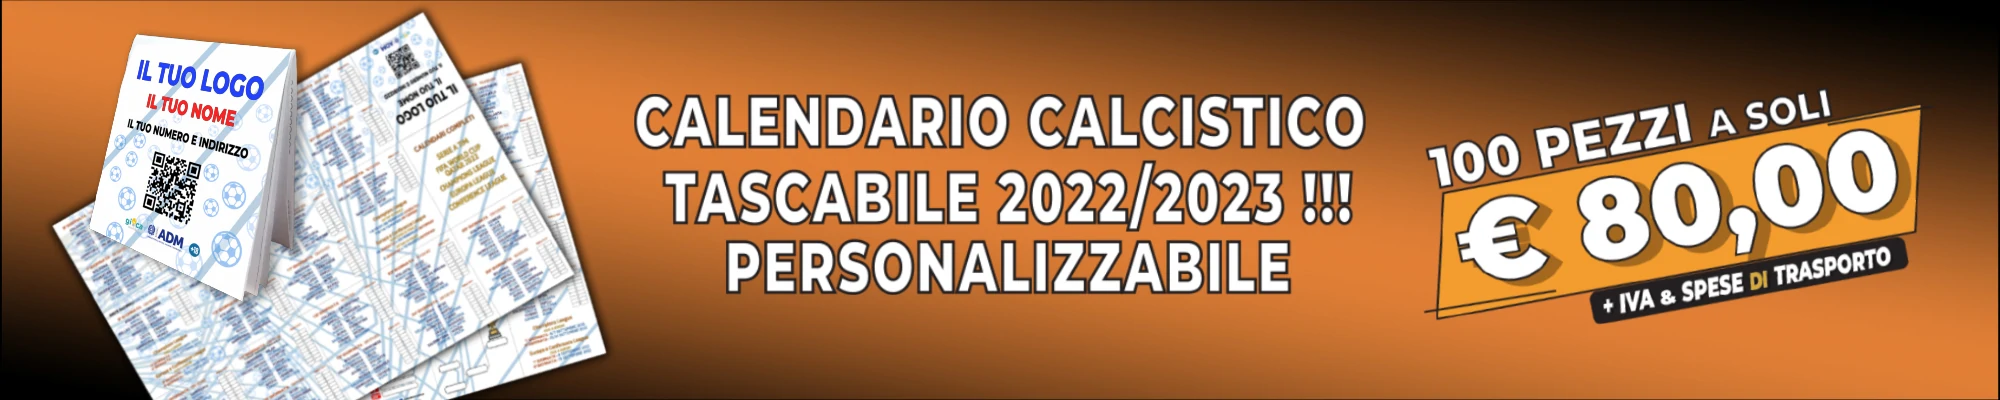 Calendario calcistico tascabile 2022-2023 personalizzabile.